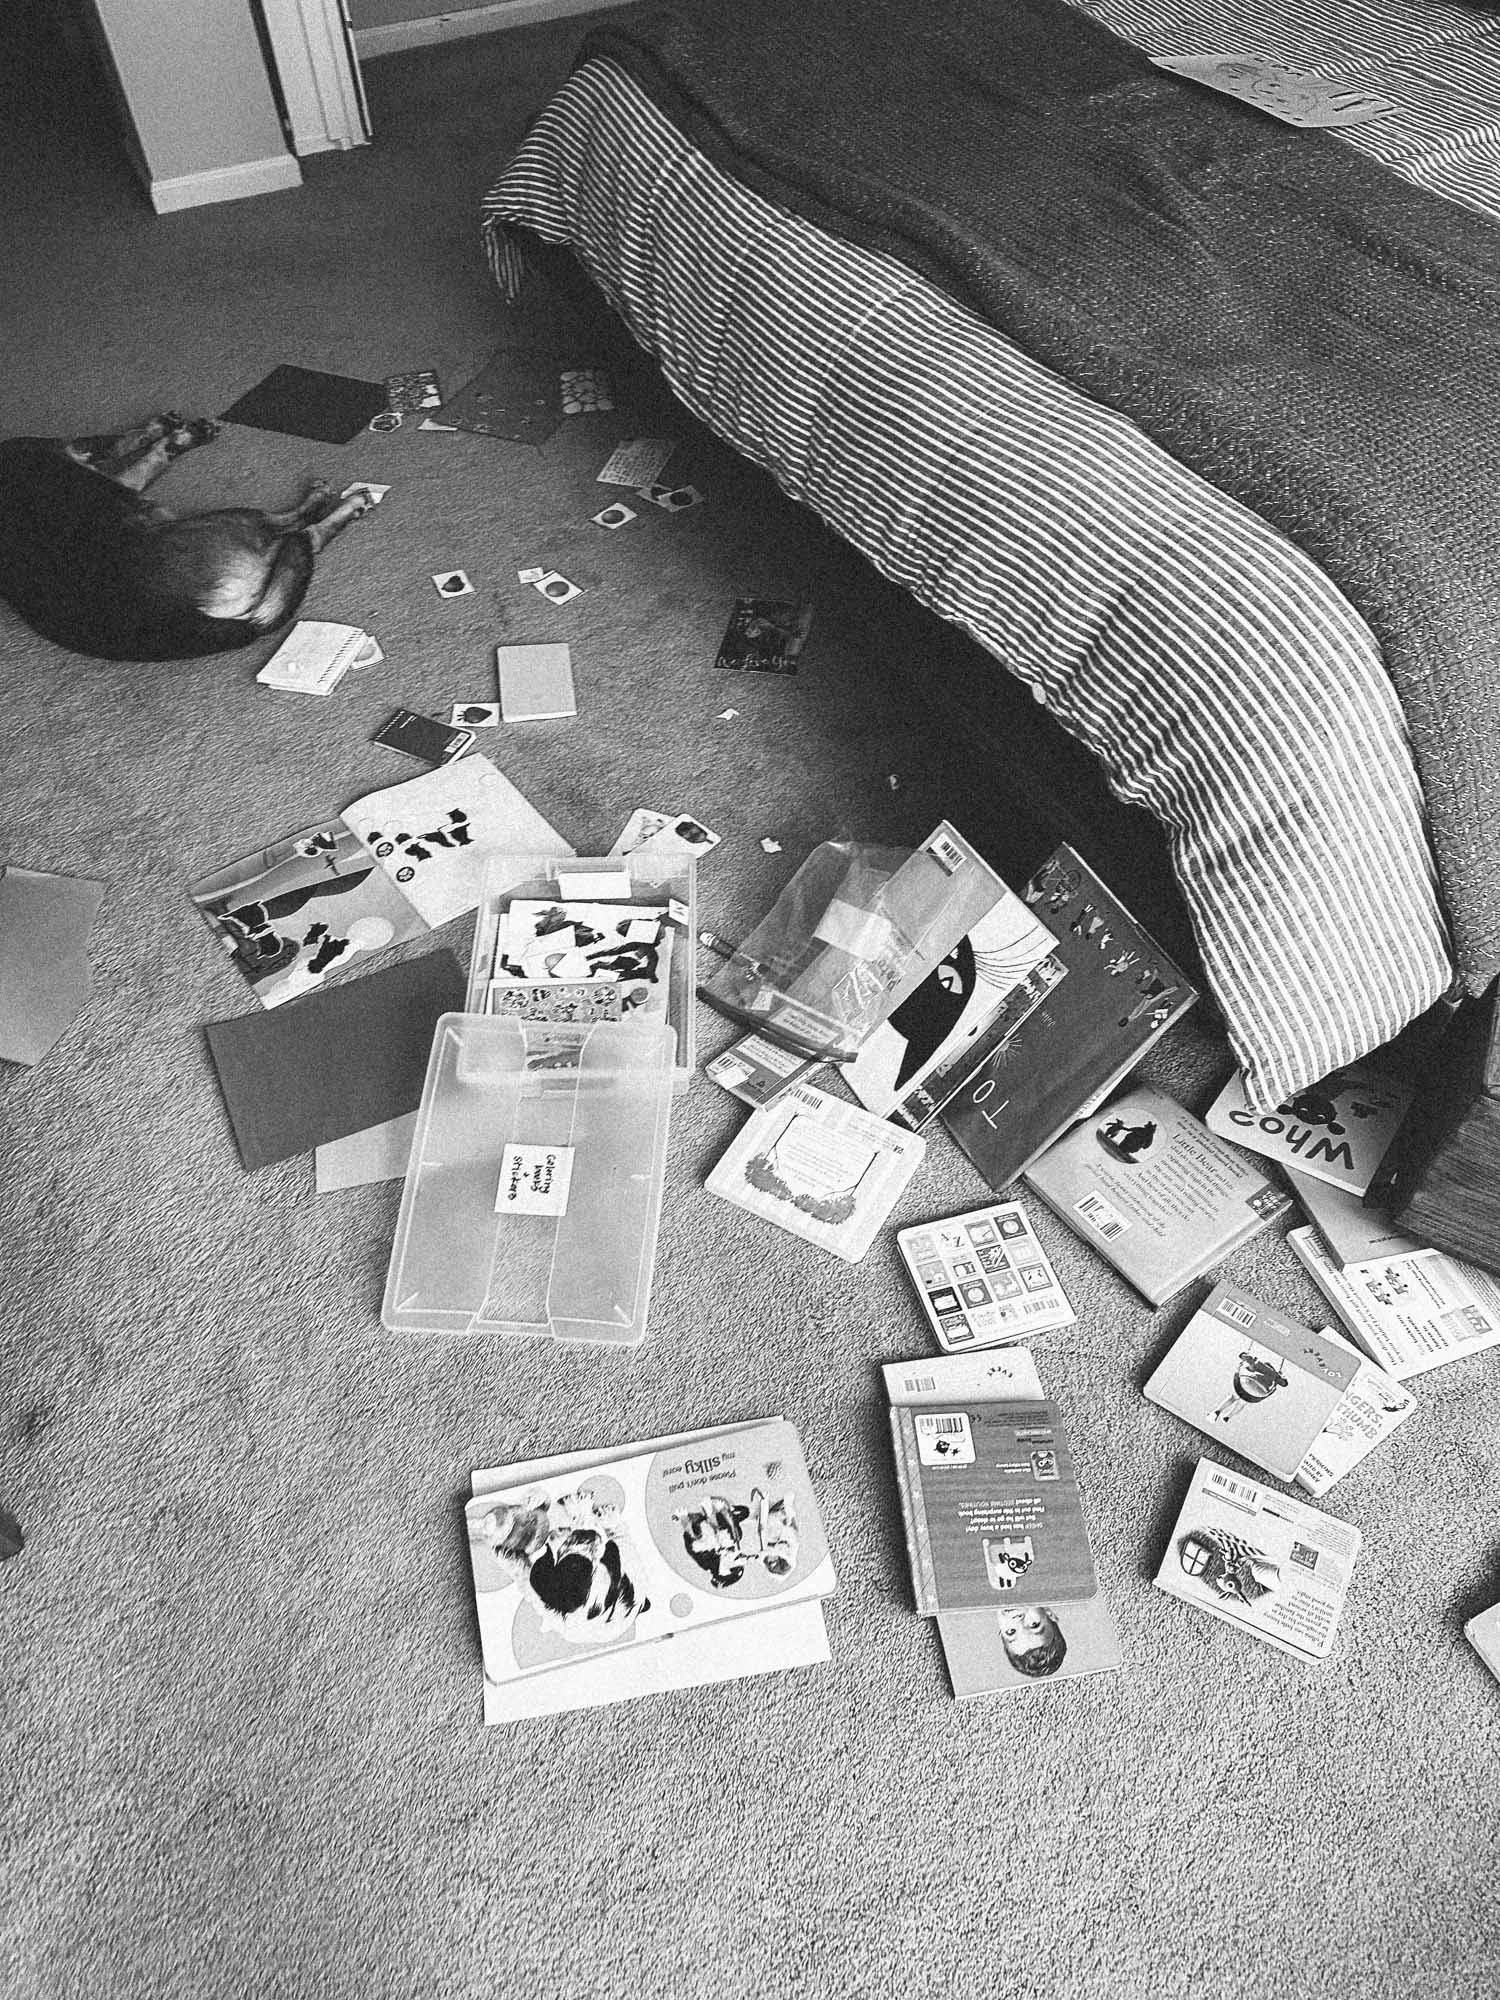 Foto preto e branco de coisas no chão em um quarto